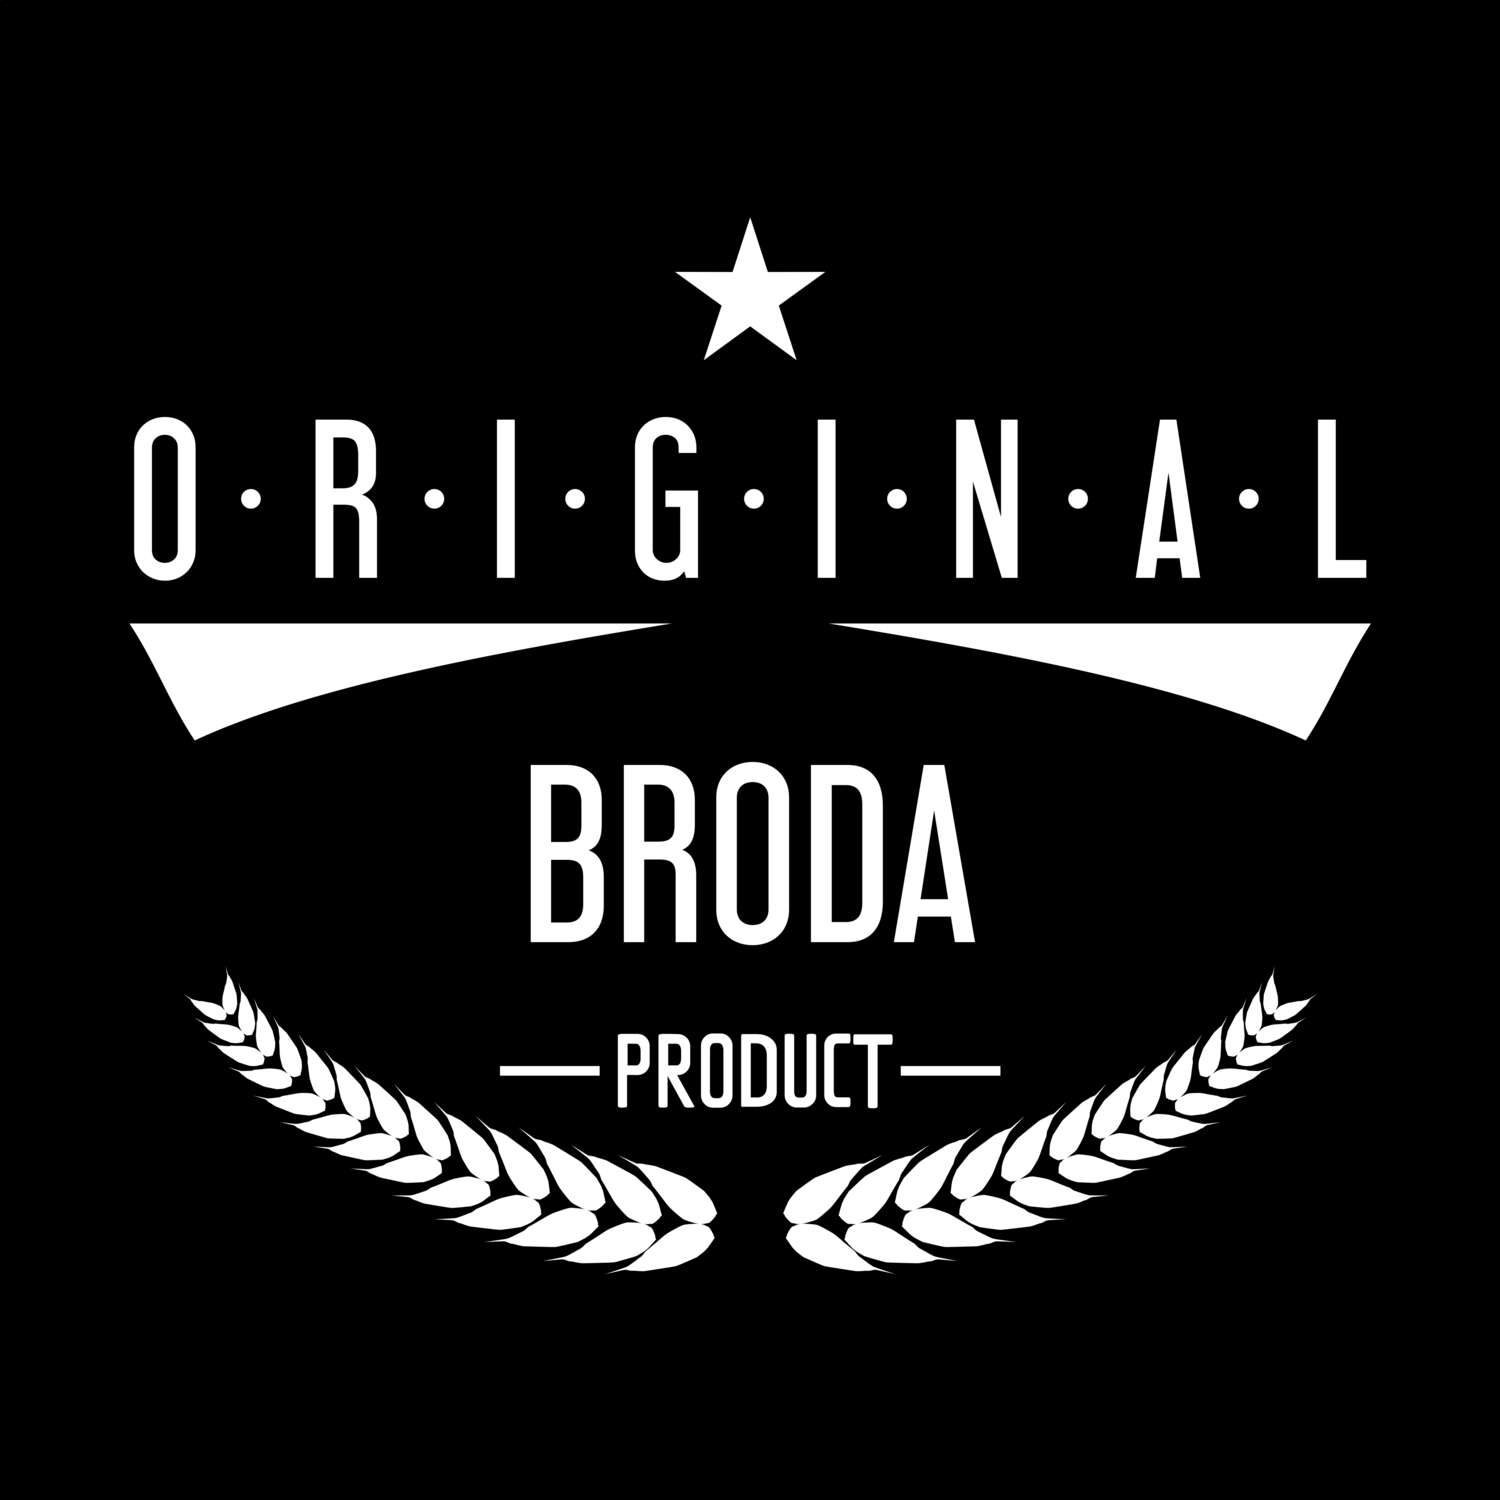 Broda T-Shirt »Original Product«